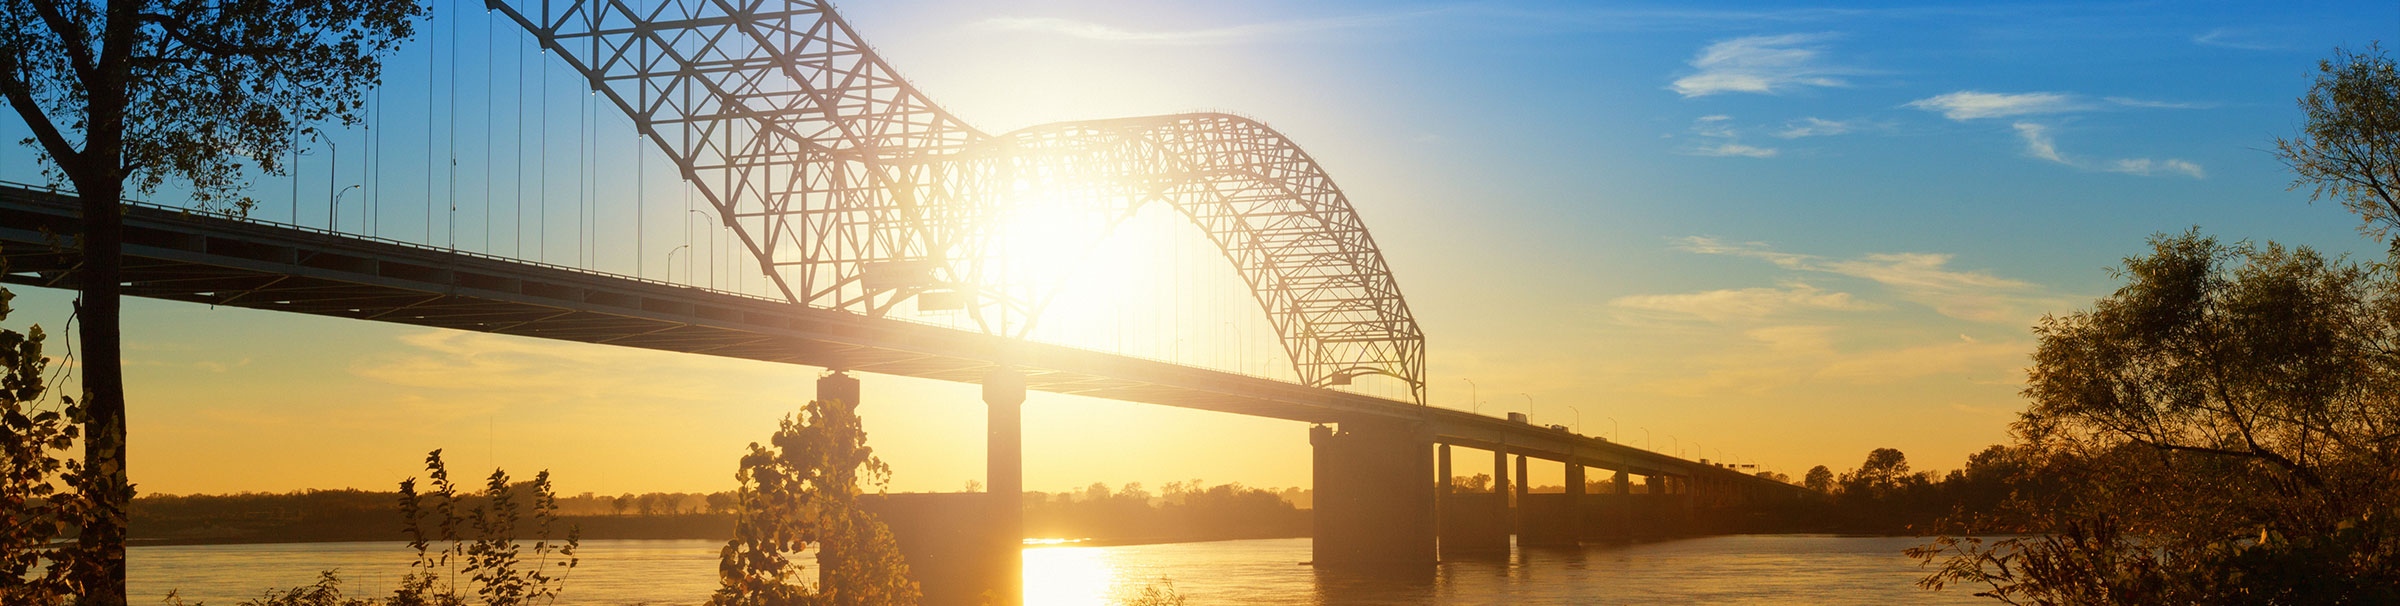 bridge at sunrise in Memphis, Tennessee